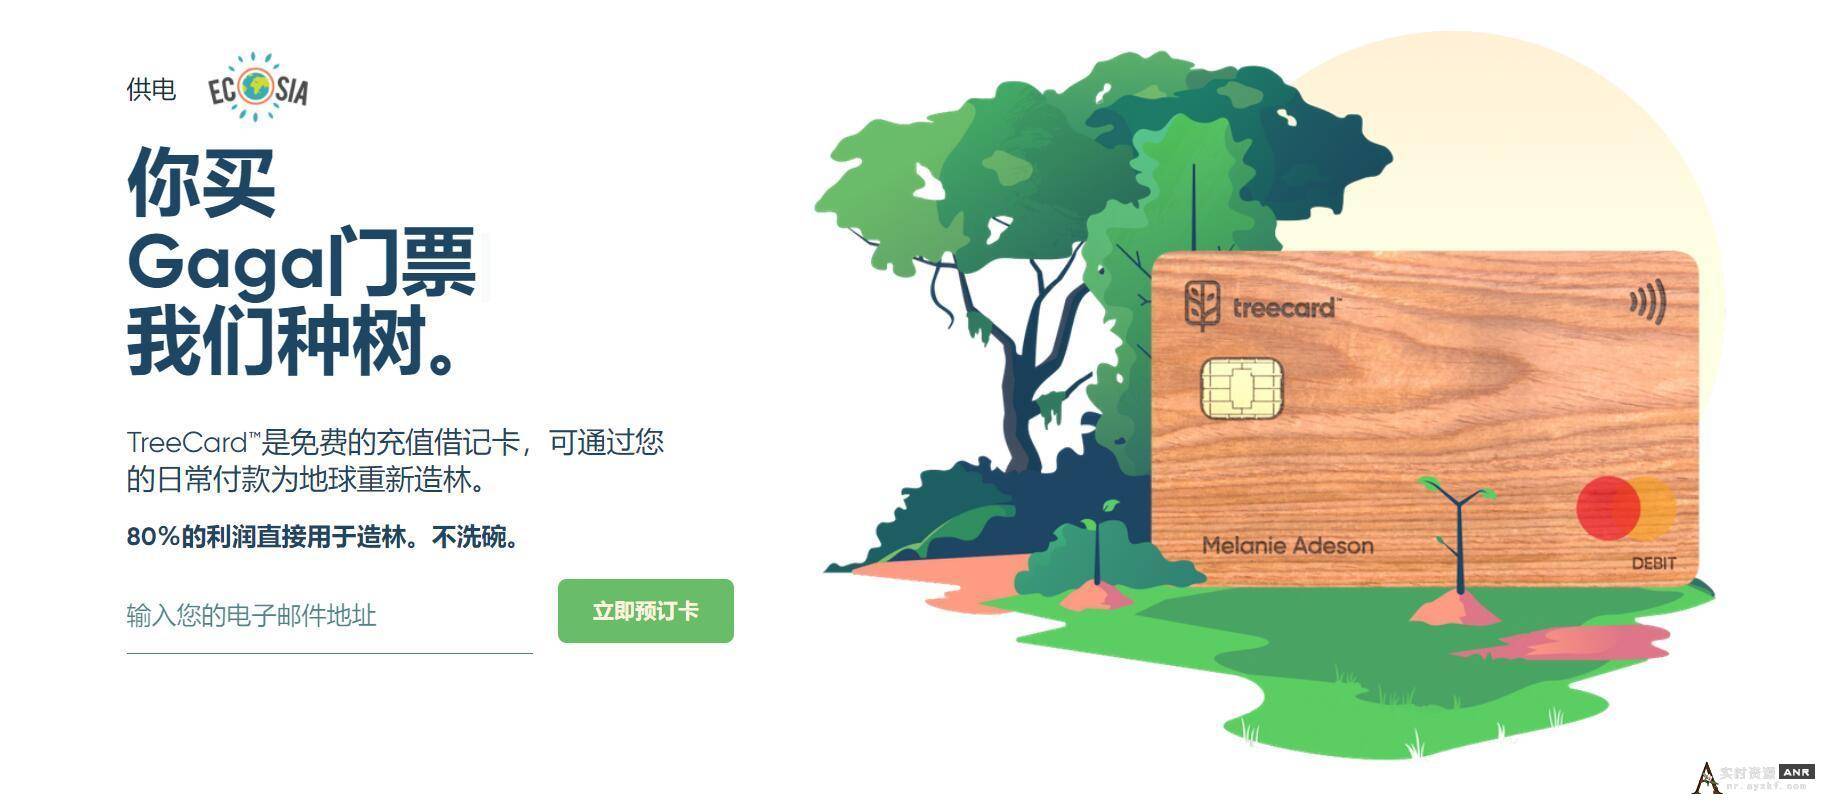 免费申请一张Mastercard 木质借记卡 无费 又收藏意义